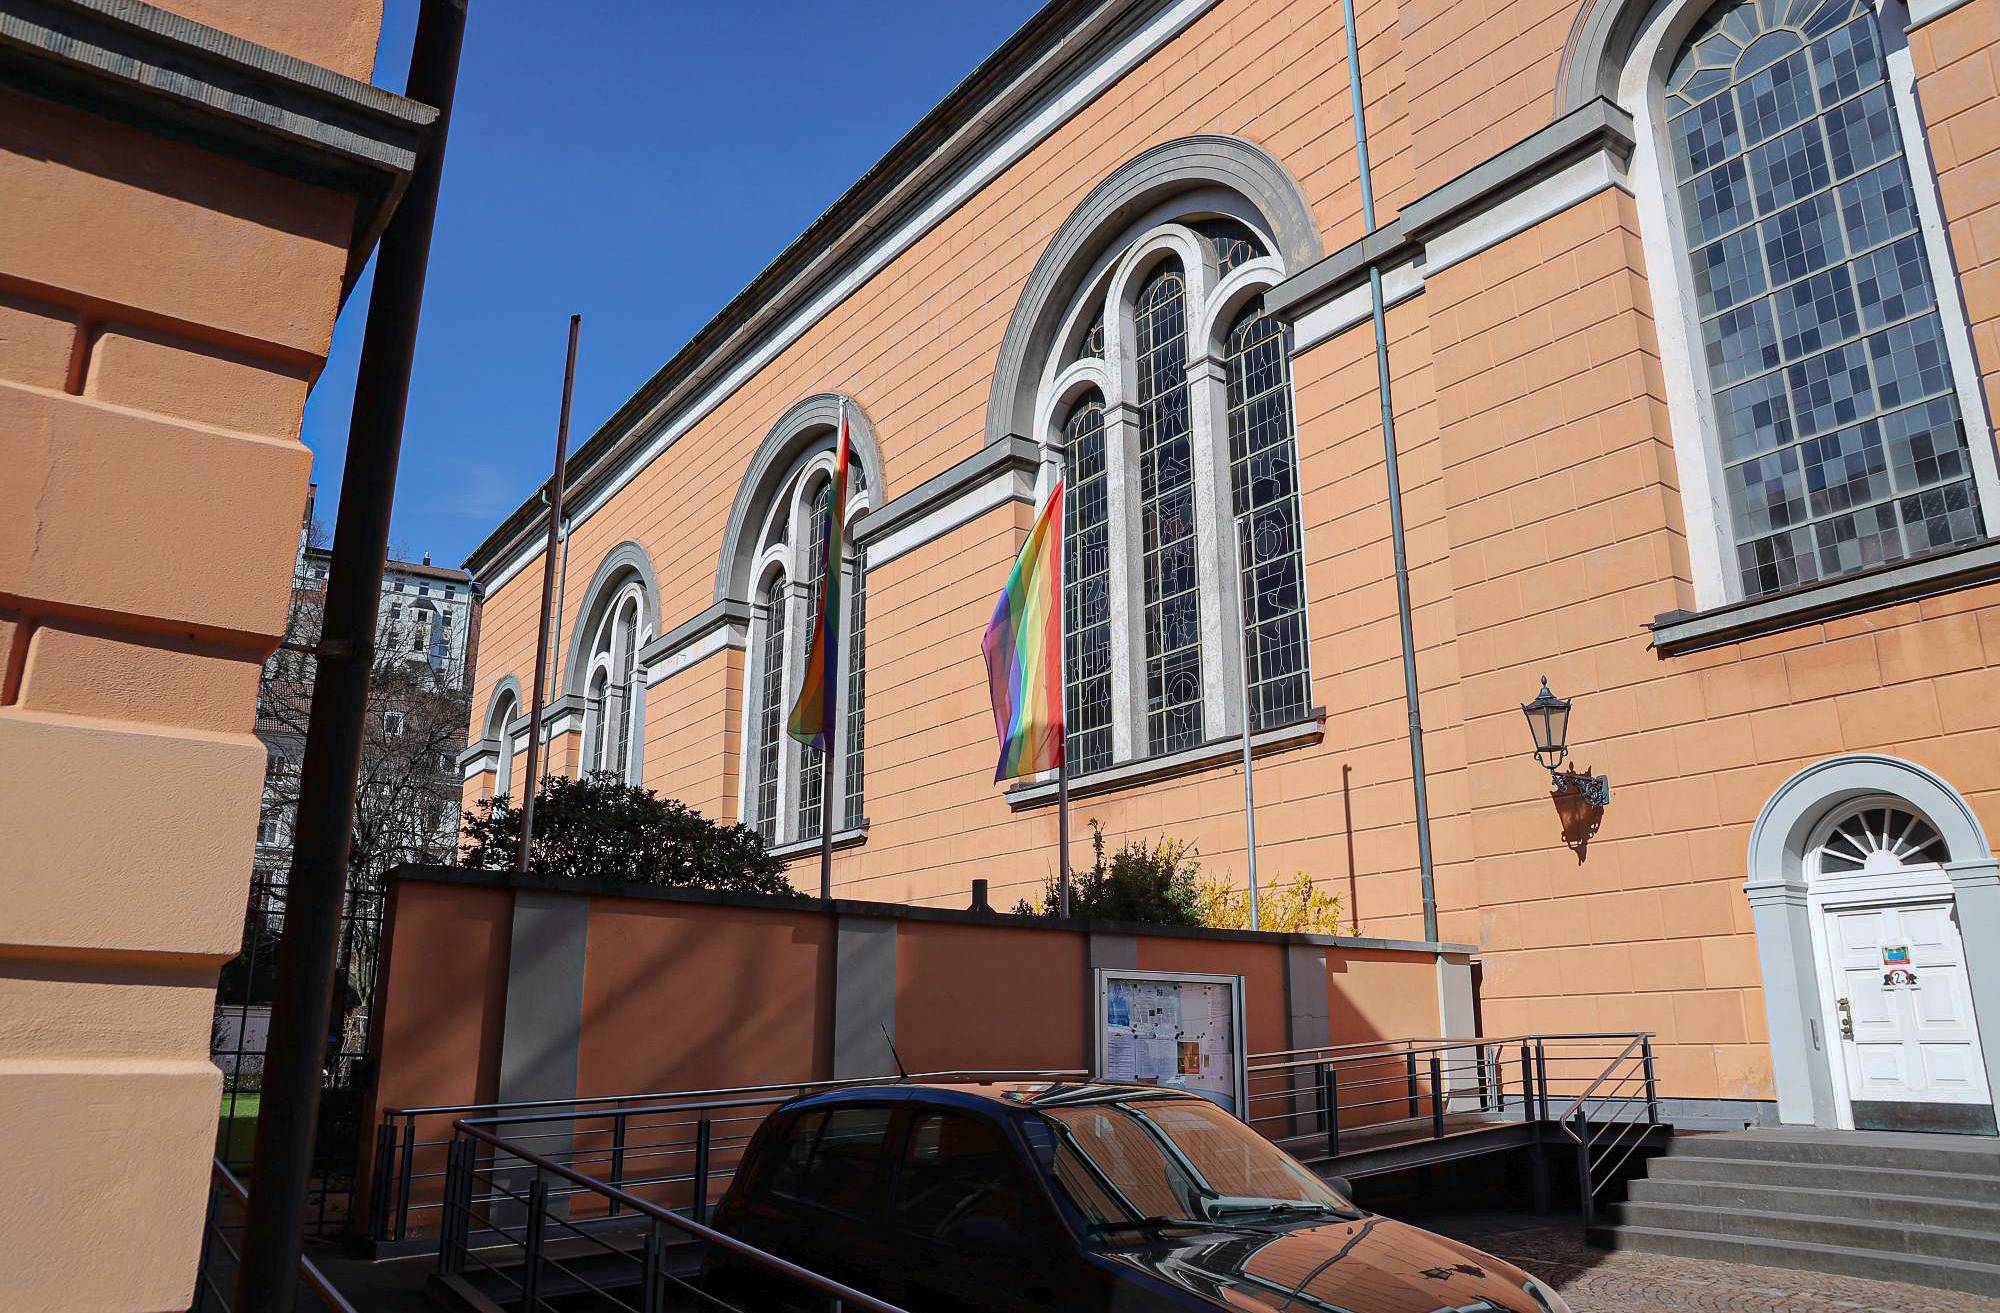  Die Regenbogenfahne im März an der St.-Laurentius-Kirche in Elberfeld. 